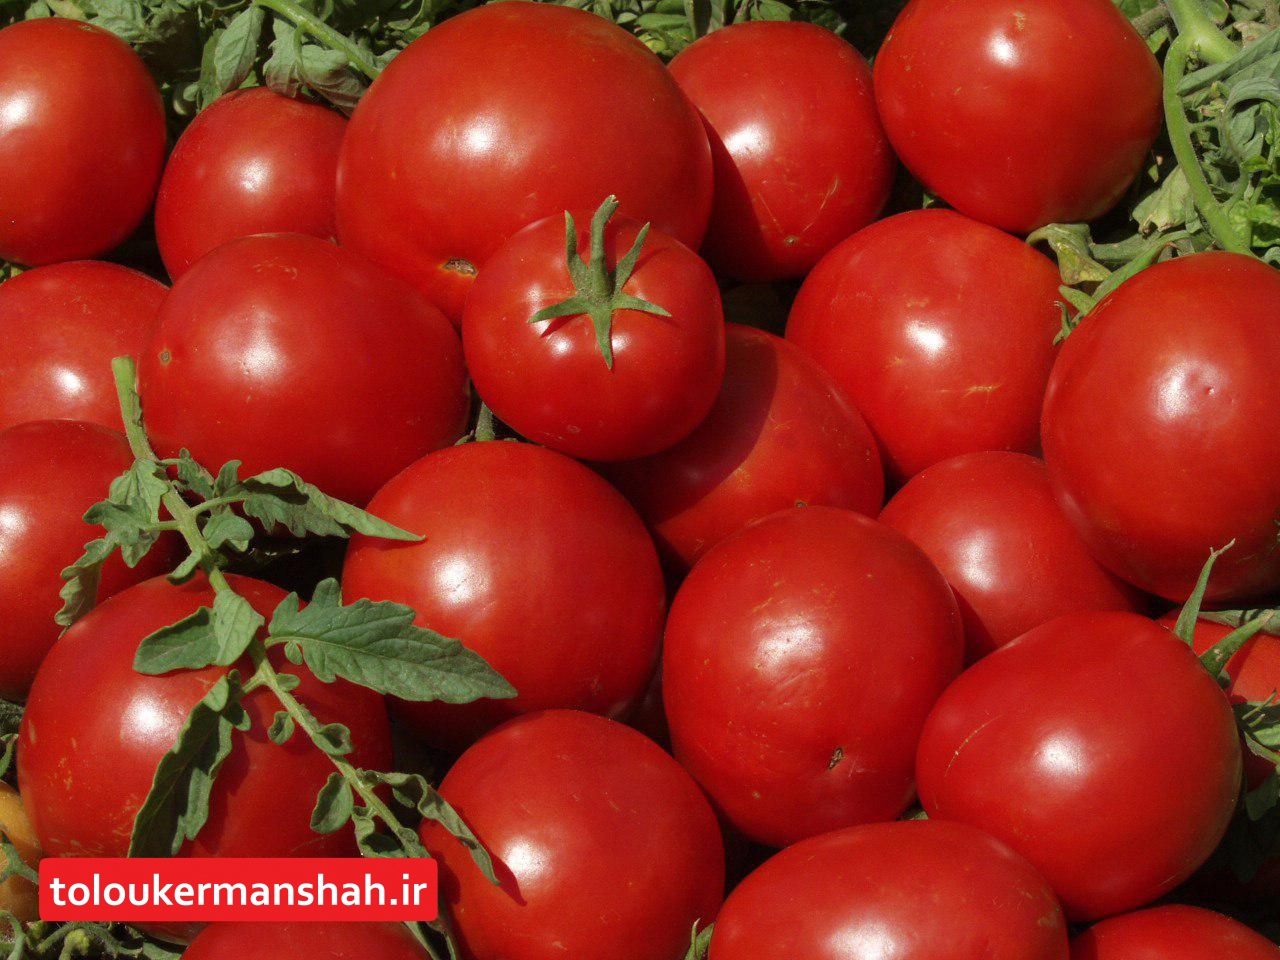 خرید حمایتی گوجه فرنگی در استان کرمانشاه از مرز ۲۶ هزار تن گذشت